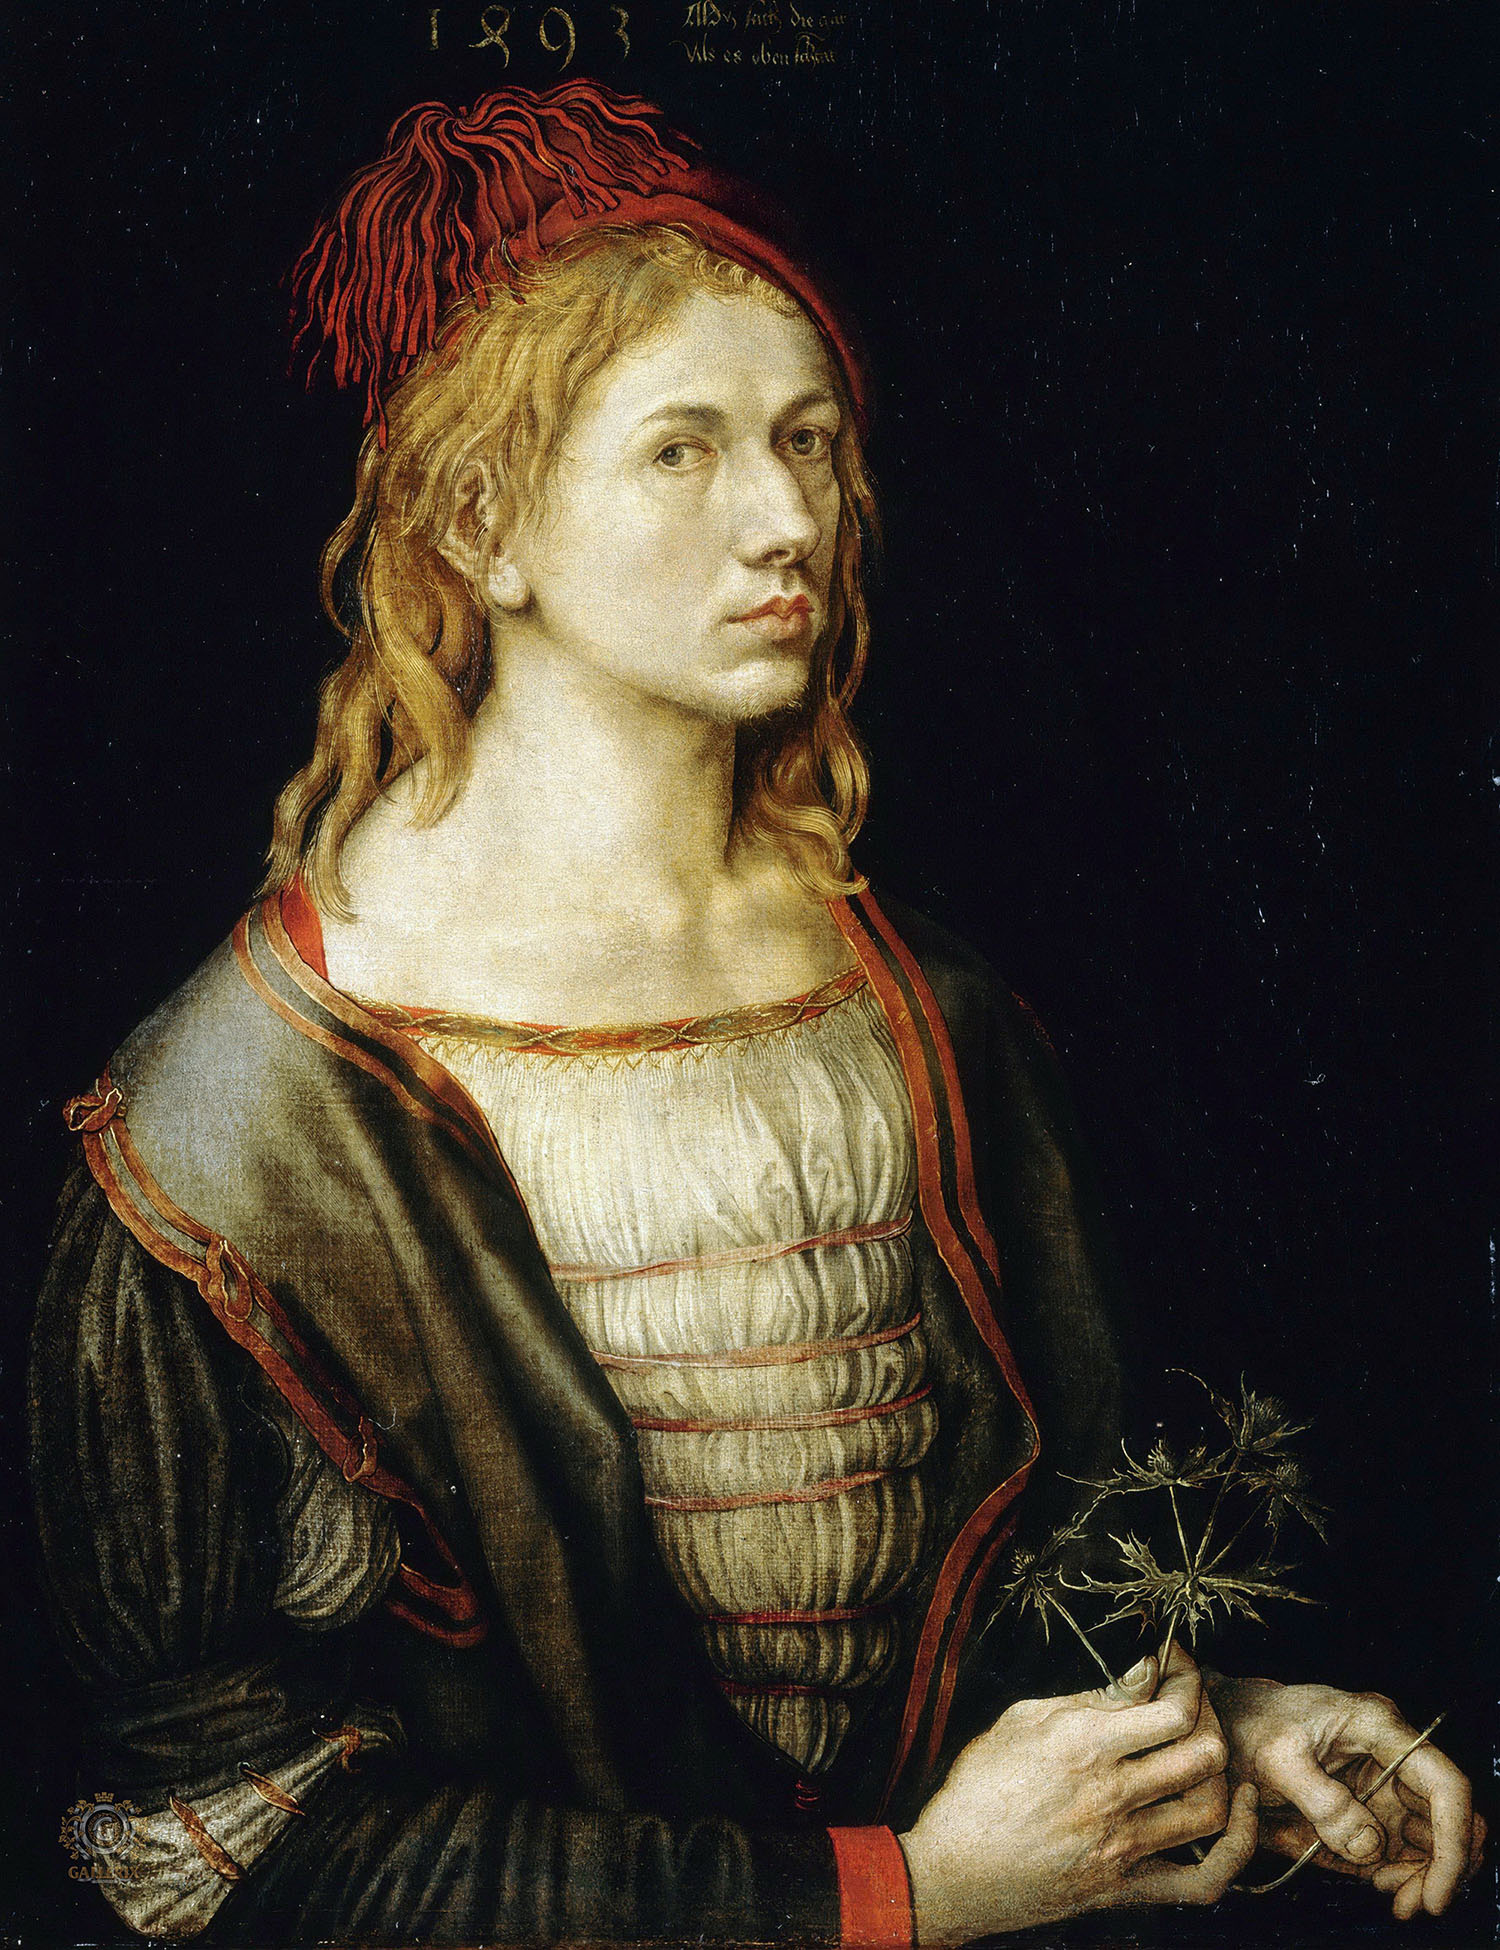 Альбрехт Дюрер. "Автопортрет с остролистом". 1493. Лувр, Париж.